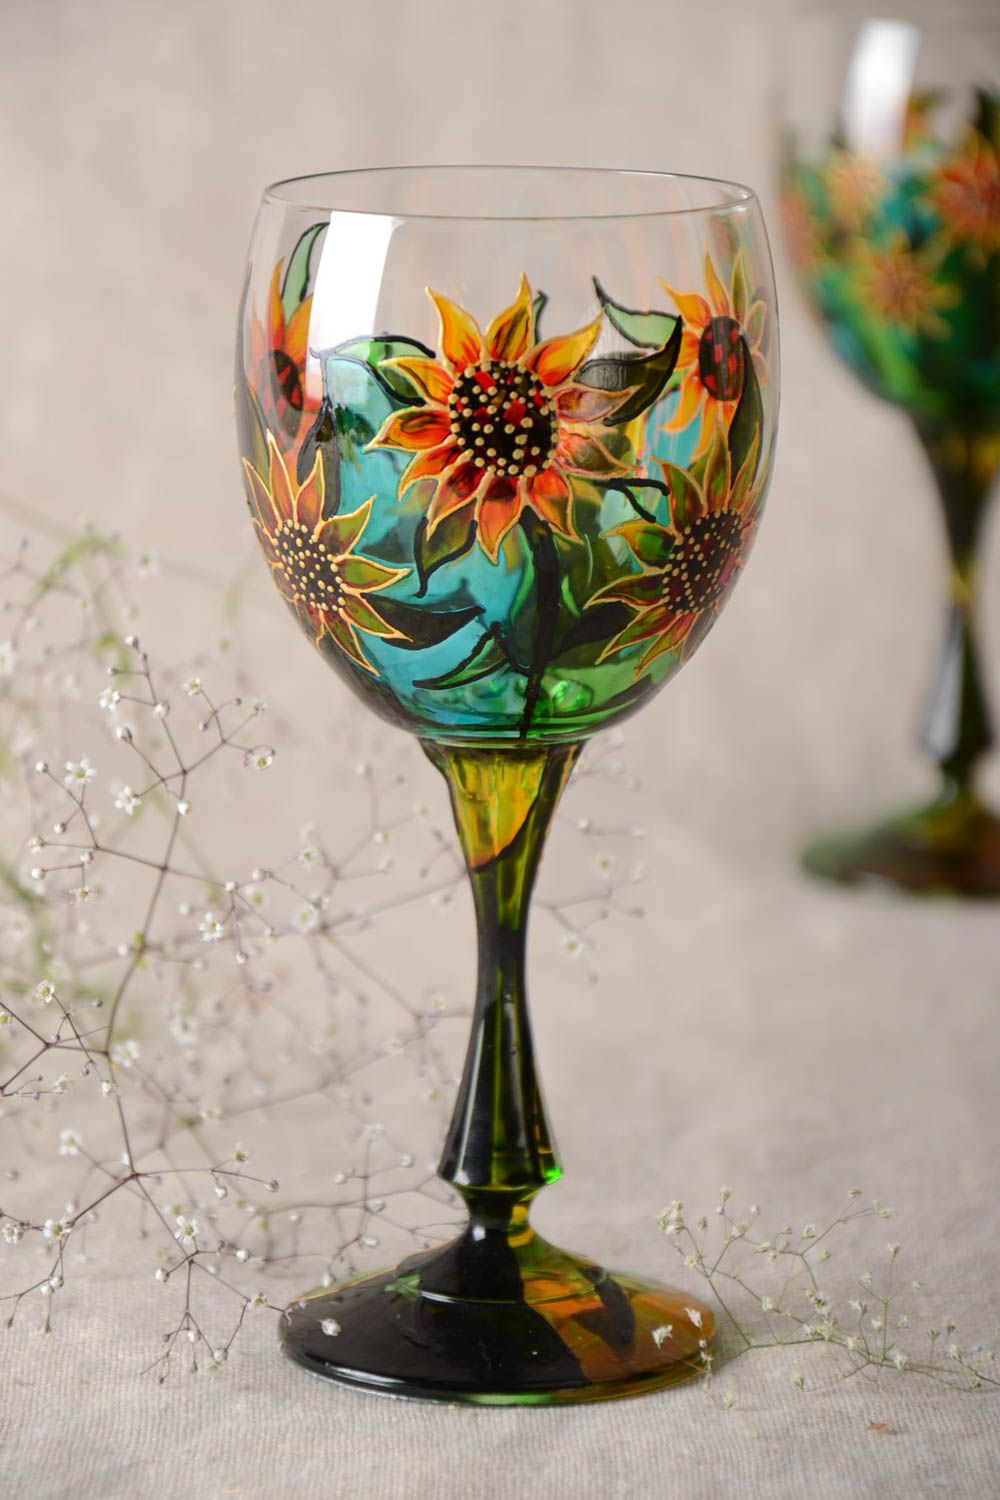 Handmade Römer Glas Designer Geschirr Geschenk Idee mit Vitrage Malerei 300 ml foto 1